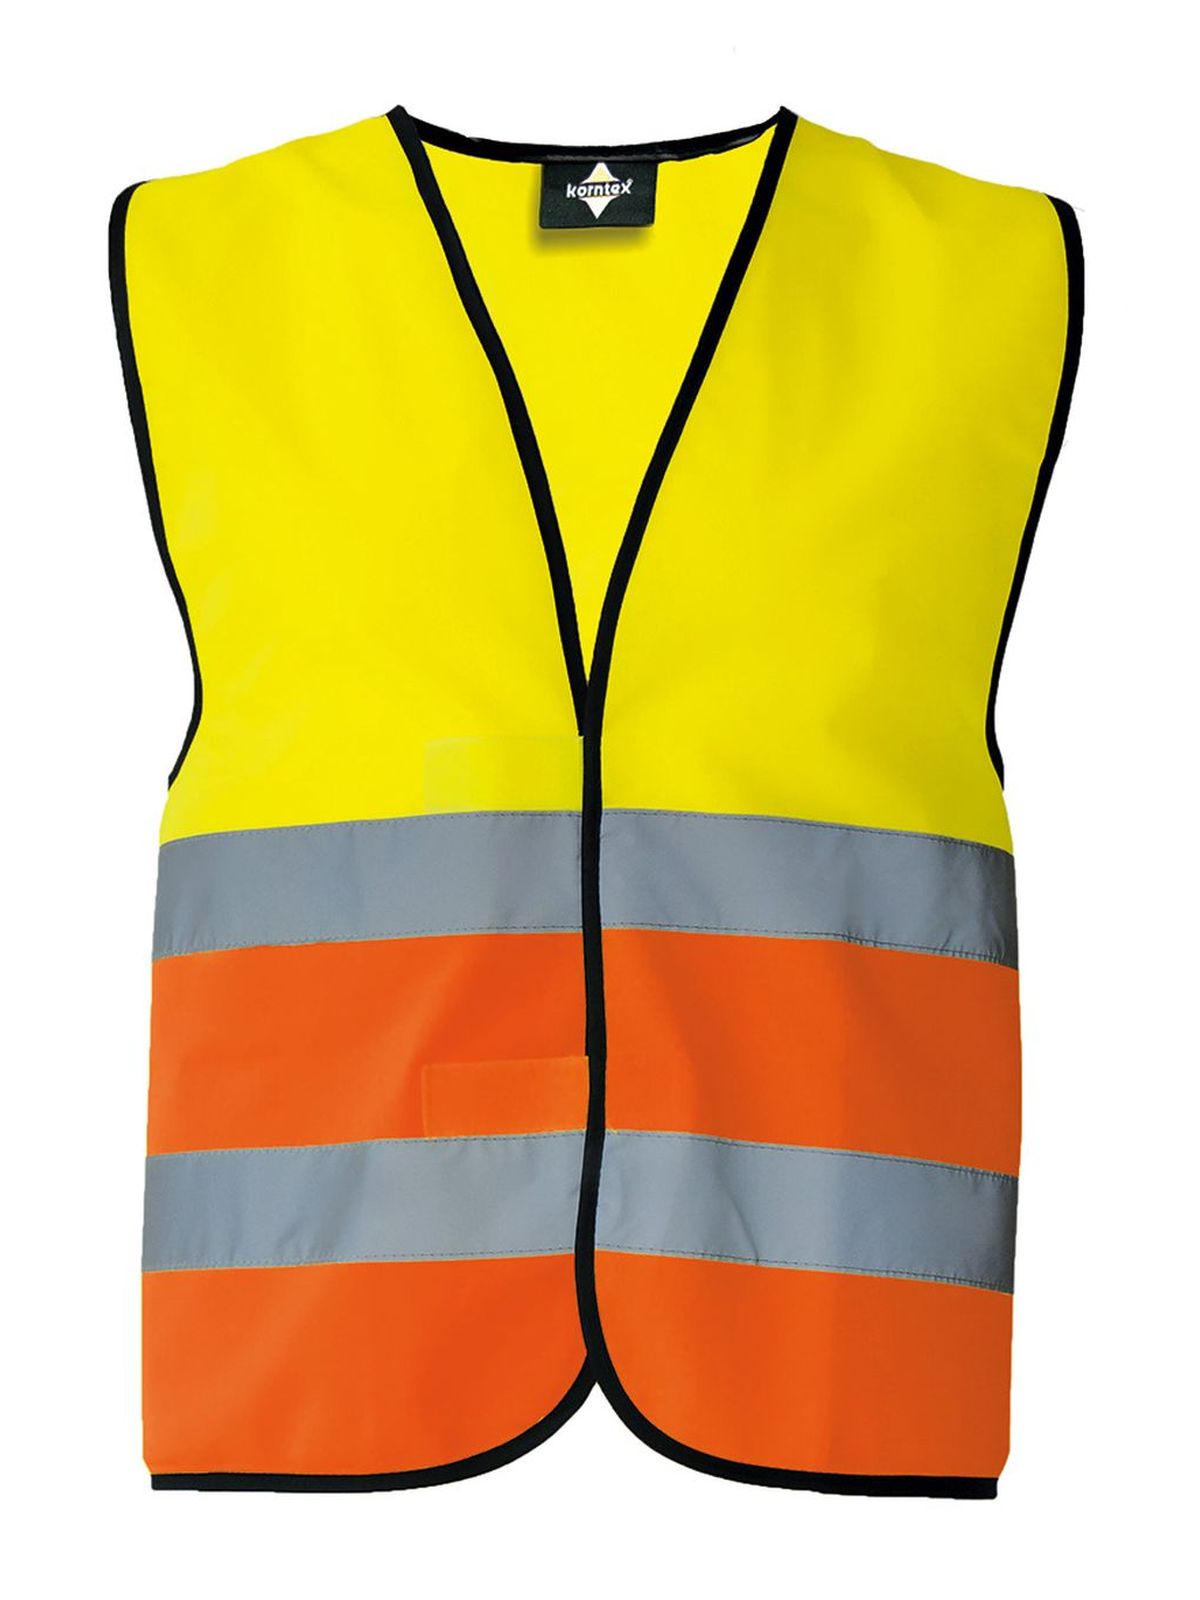 basic-safety-vest-yellow-orange.webp